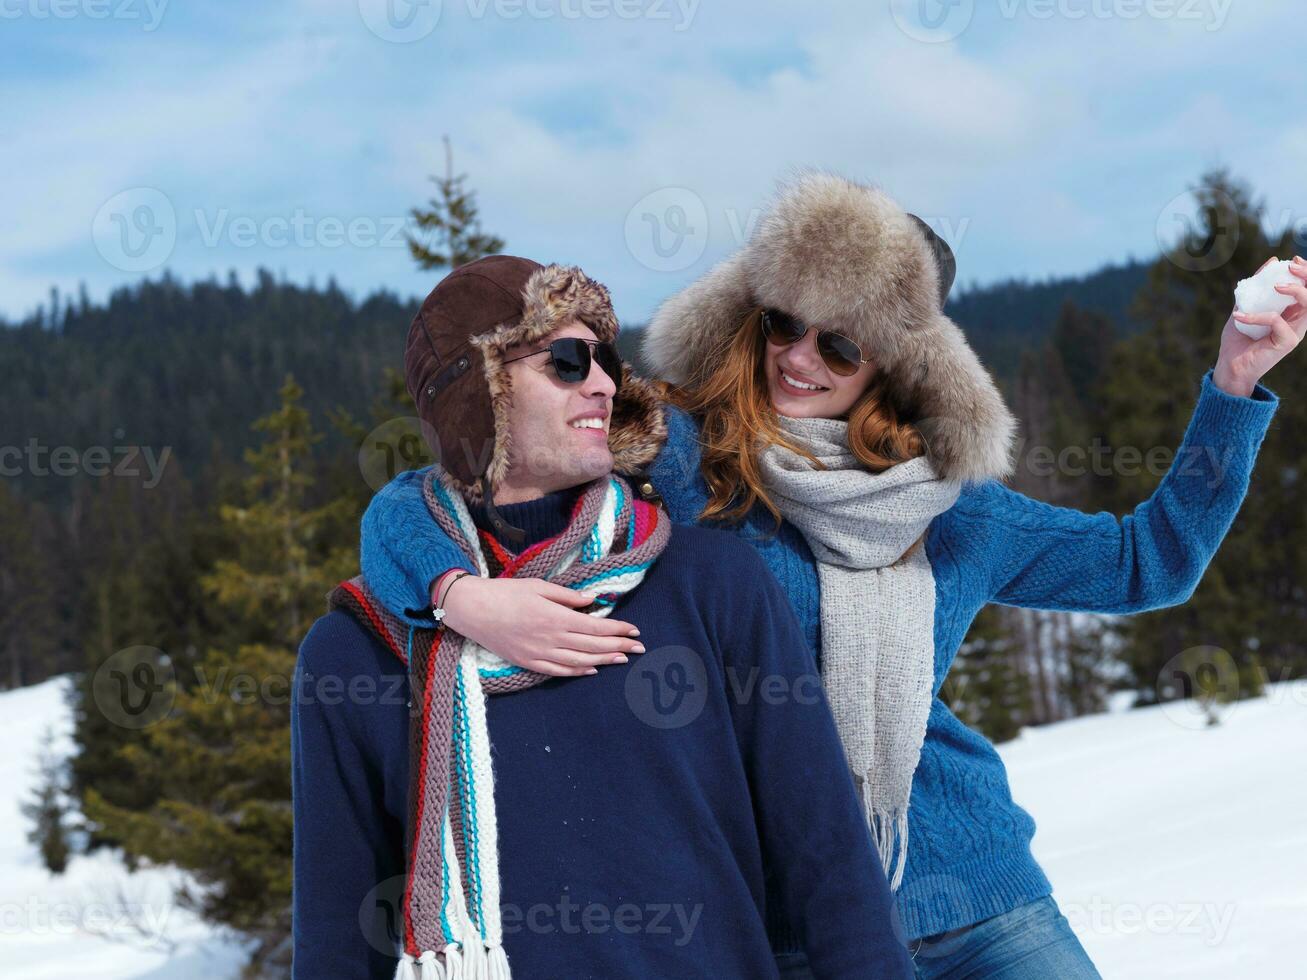 feliz pareja joven divirtiéndose en un espectáculo fresco en vacaciones de invierno foto